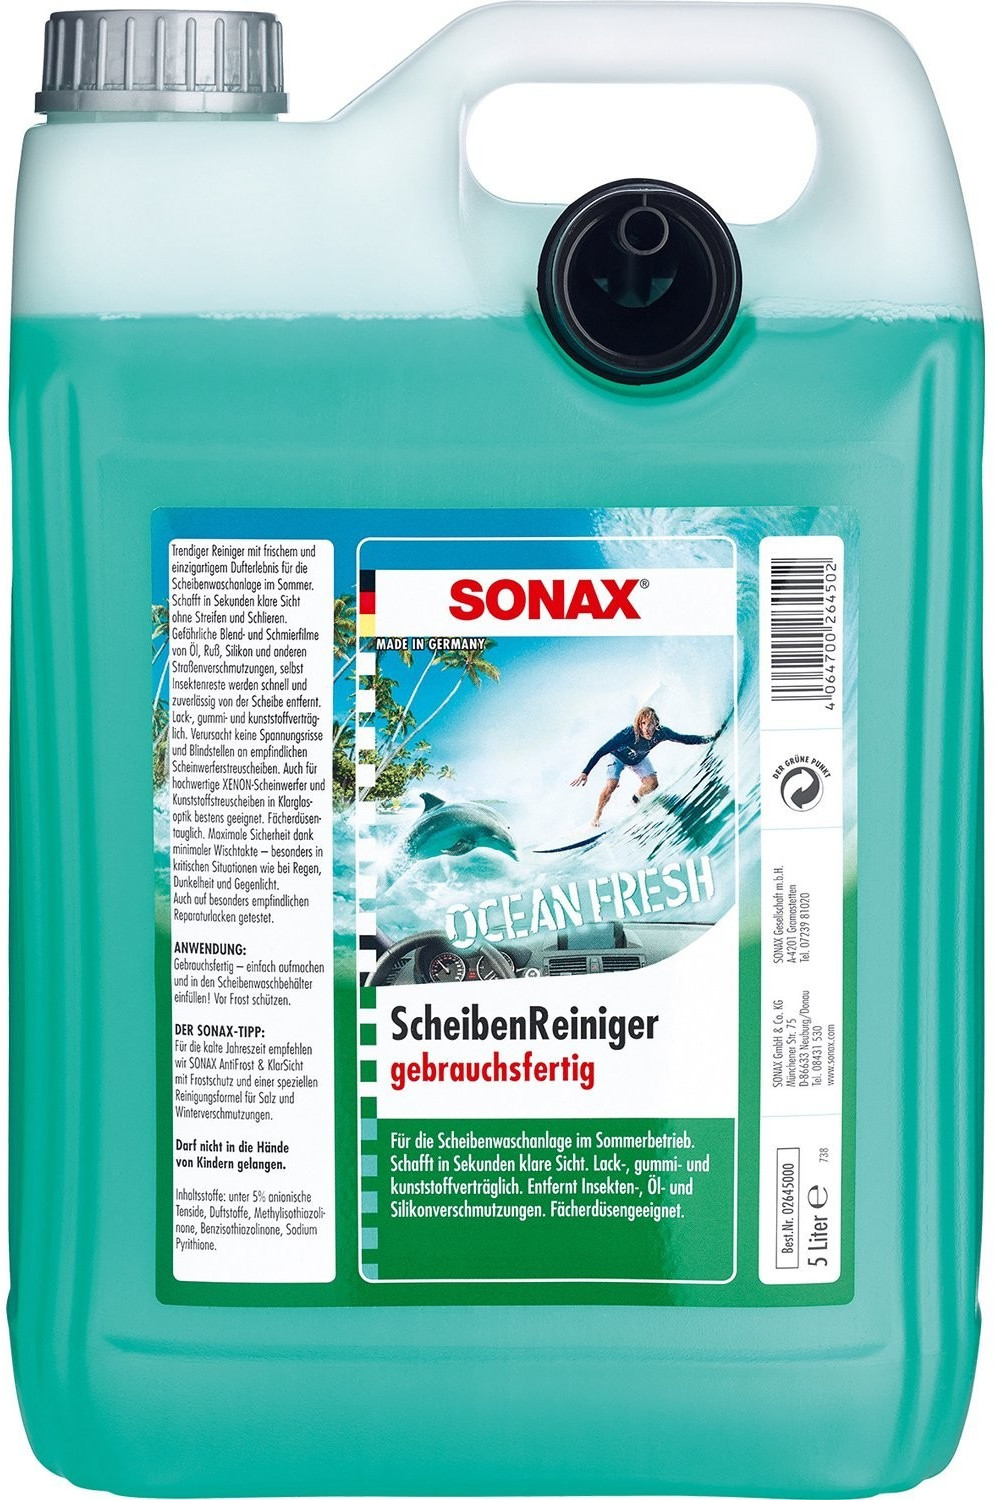 Sonax 02645000 ScheibenReiniger gebrauchsfertig Ocean-Fresh 5 l ab 6,27 €